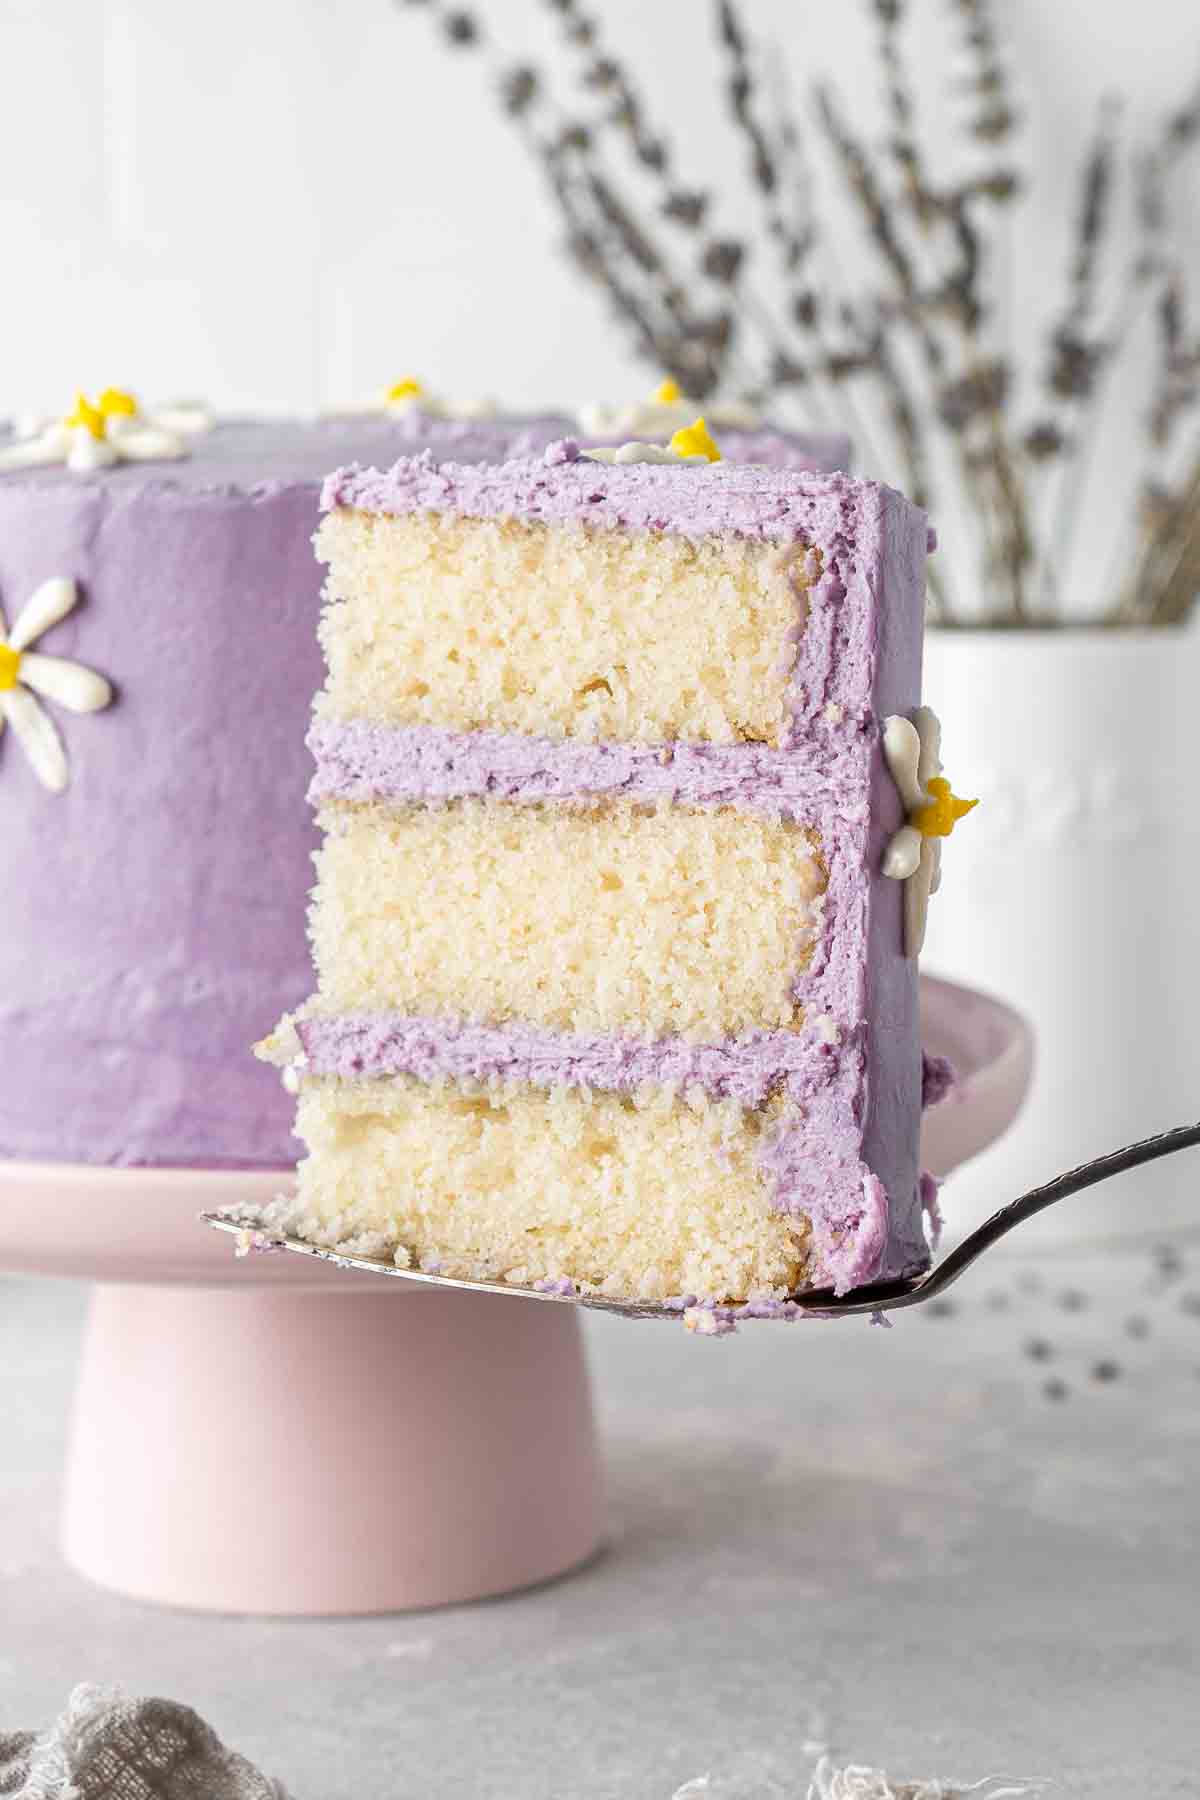 A slice of vegan lemon cake with lavender buttercream.